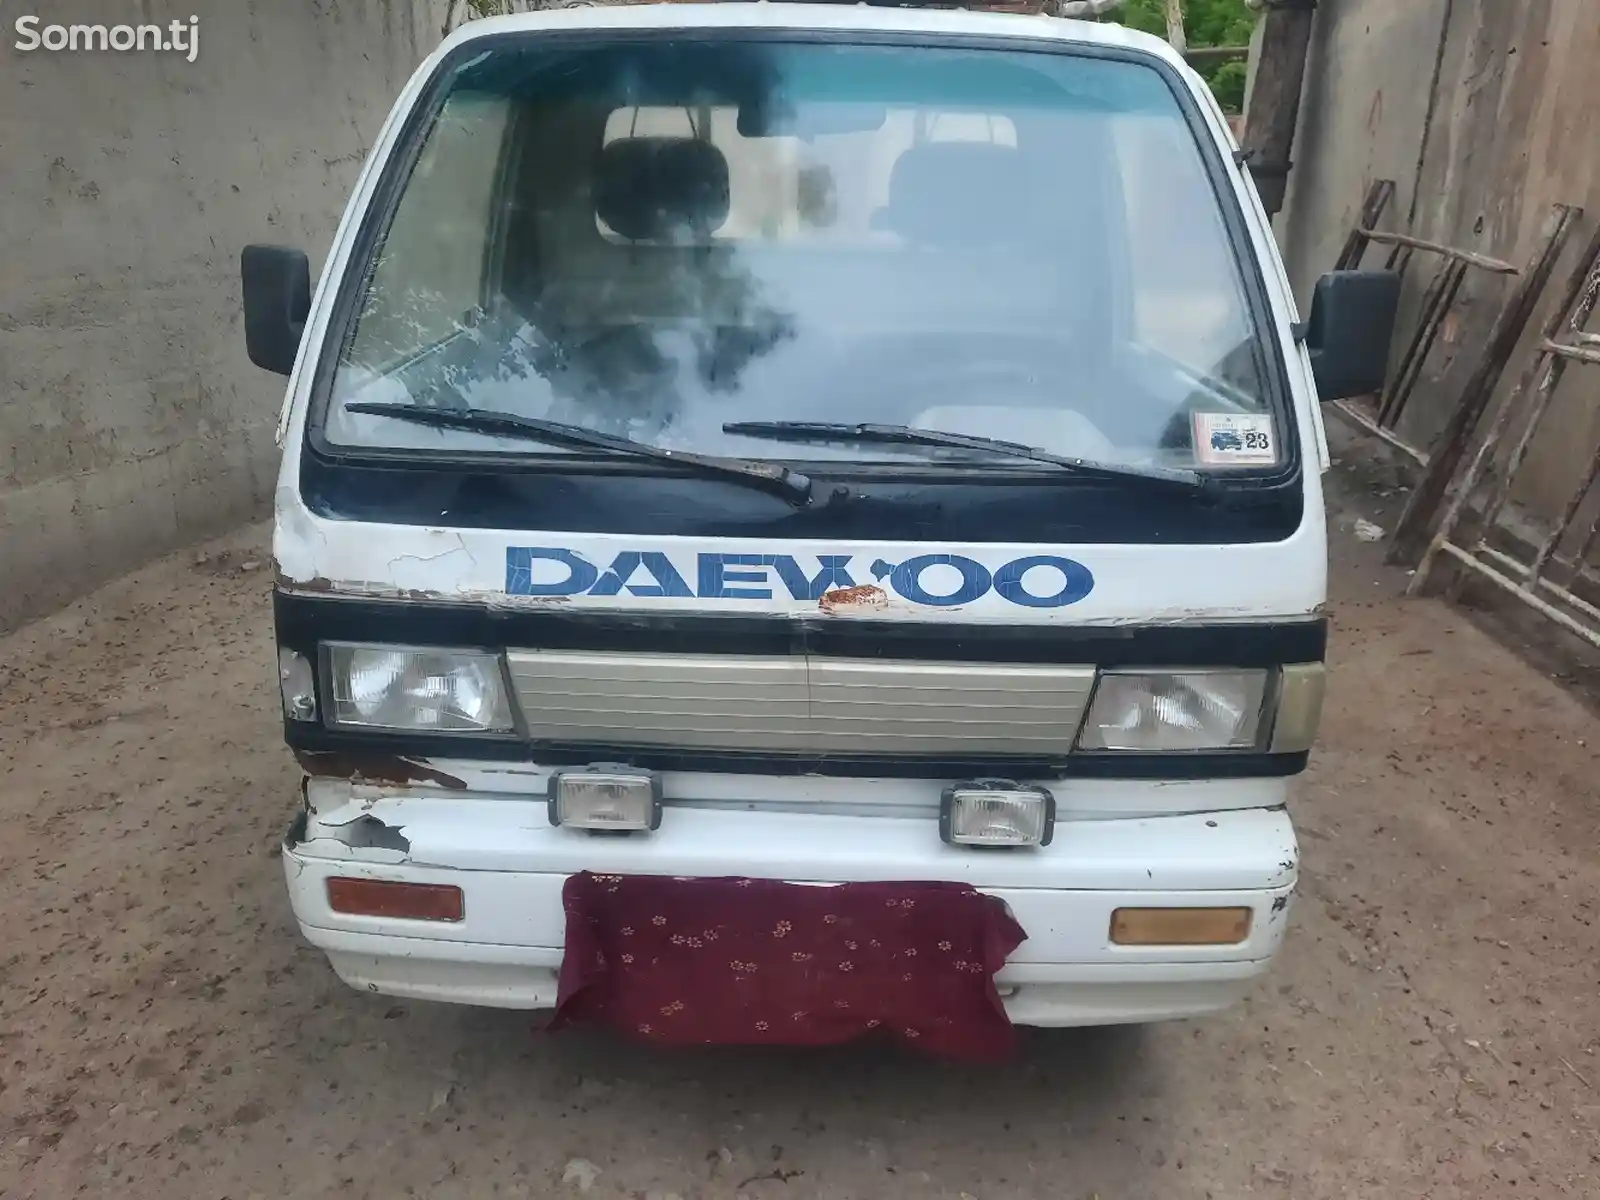 Бортовой автомобиль Daewoo Labo, 1997-1